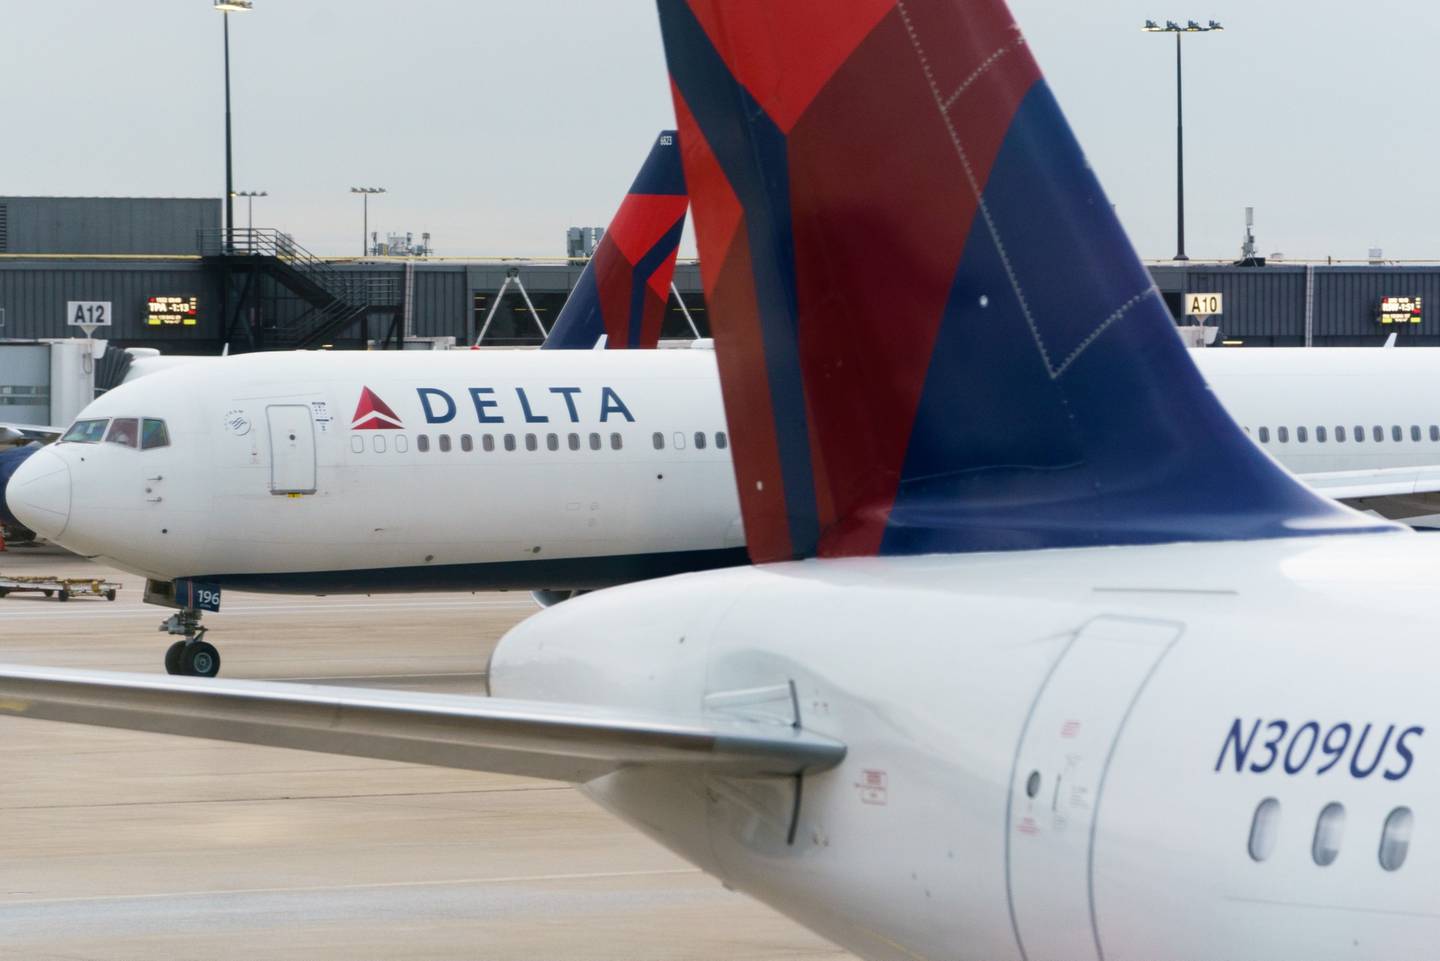 Para el CEO de Delta Air Lines, Ed Bastian, la demanda se ha elevado y las tarifas de este verano pueden ser un 30% más altas que los niveles anteriores a la pandemia. dfd